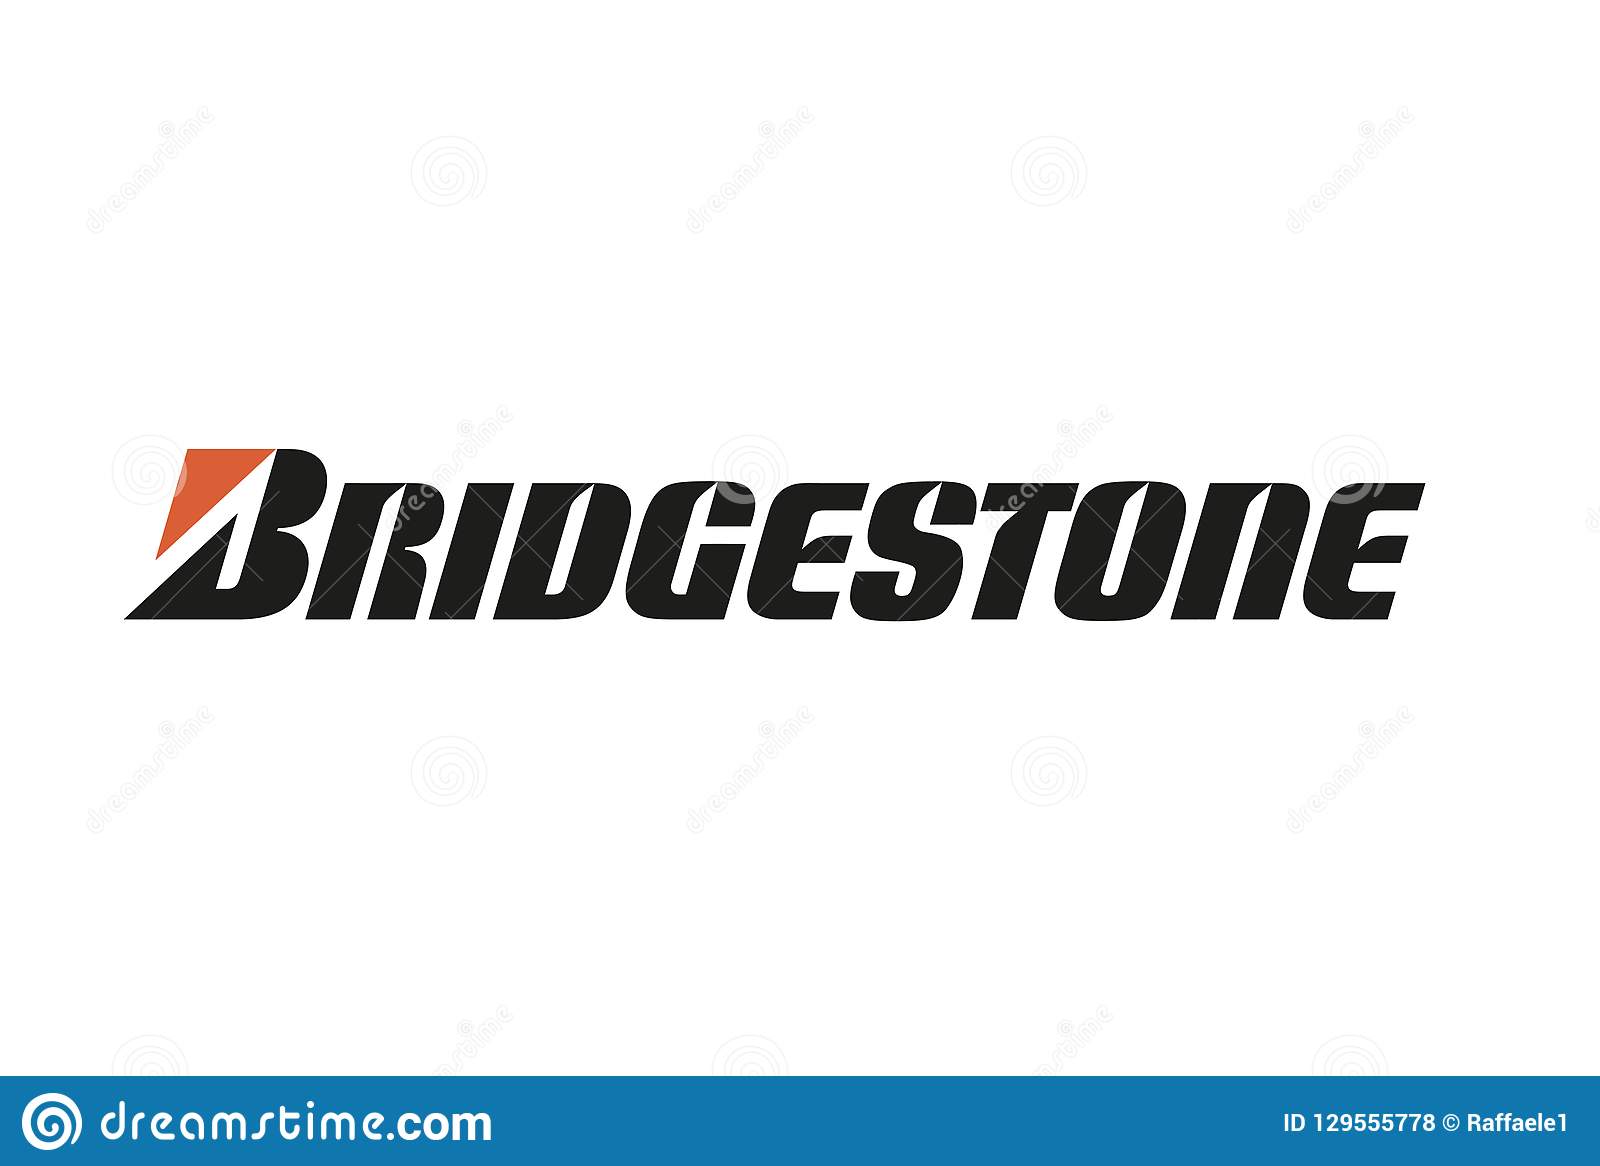 Bridgestone predstavlja ažurirani logo